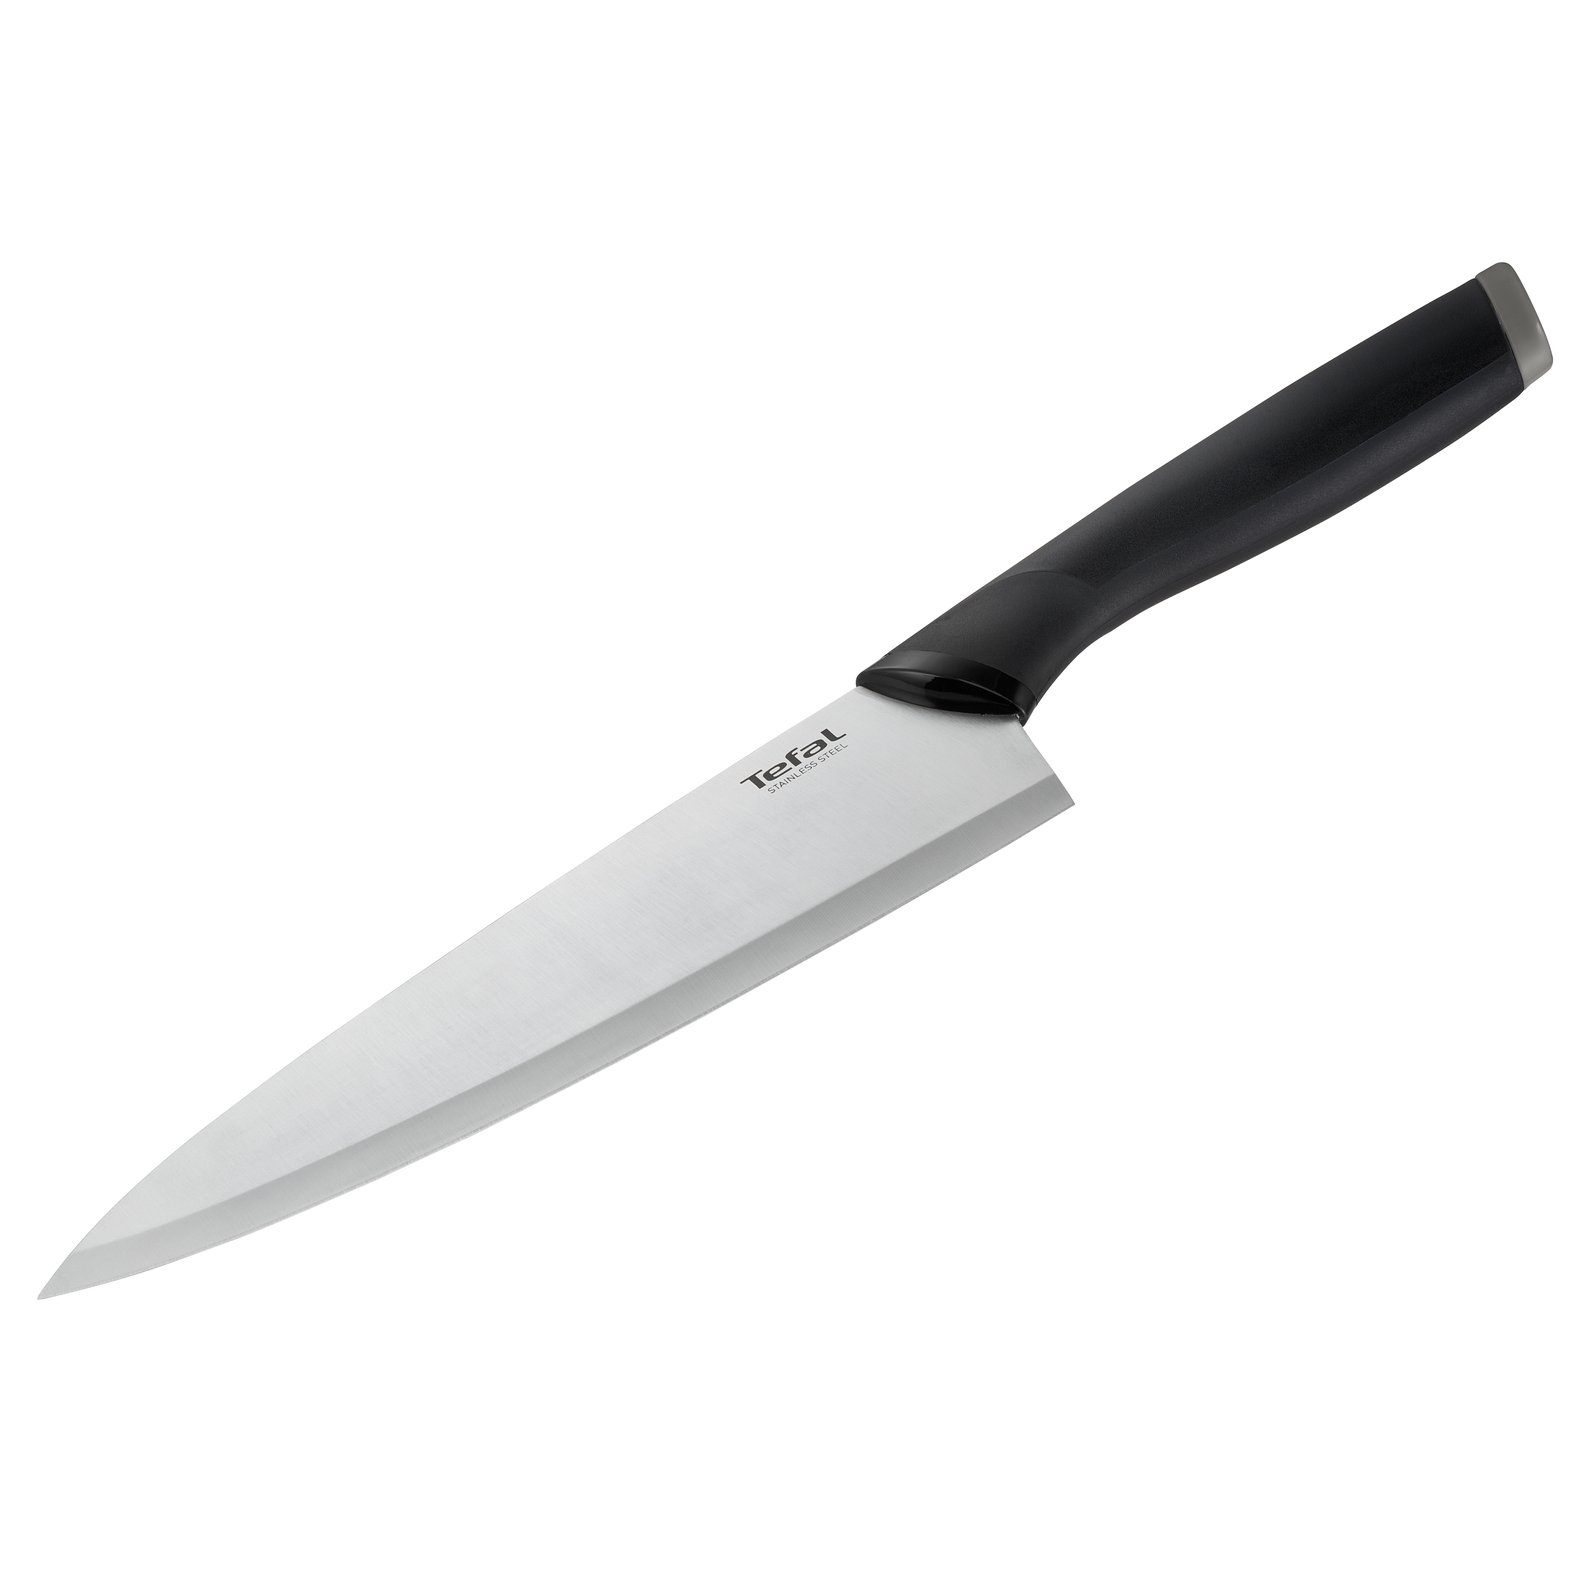 TEFAL Comfort Chef Knife 2100121746 20,5 cm černý - nůž šéfkuchaře z nerezové oceli